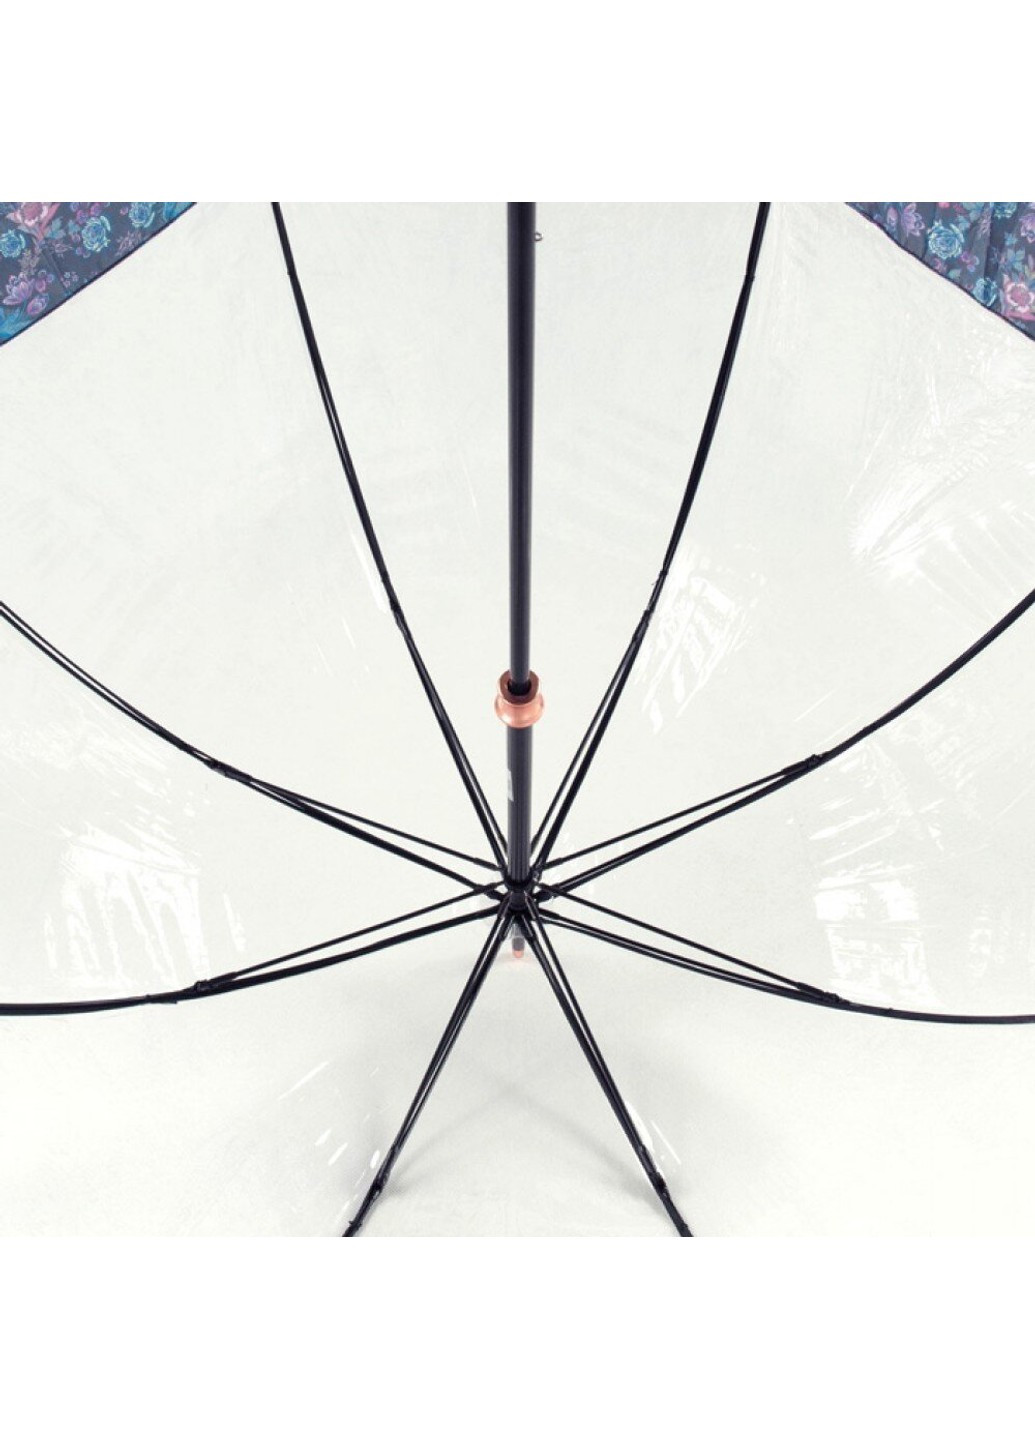 Женский механический зонт-трость Birdcage-2 Luxe L866 Luminous Floral (Светящиеся цветы) Fulton (262449435)